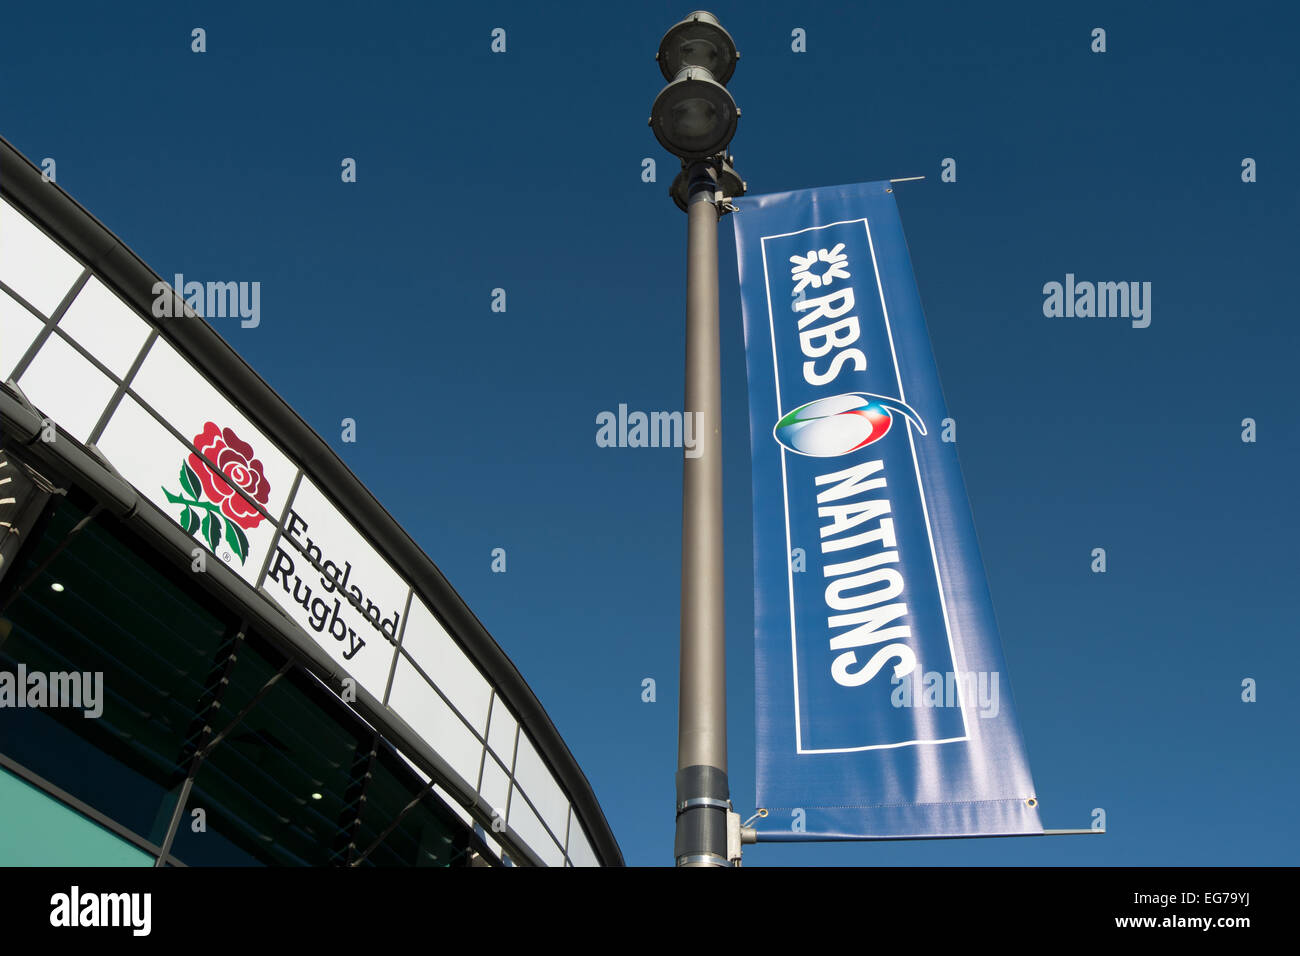 La pendaison la bannière pour le tournoi des Six nations de rugby 2015 à l'extérieur du stade de Twickenham, London, Middlesex, Angleterre Banque D'Images